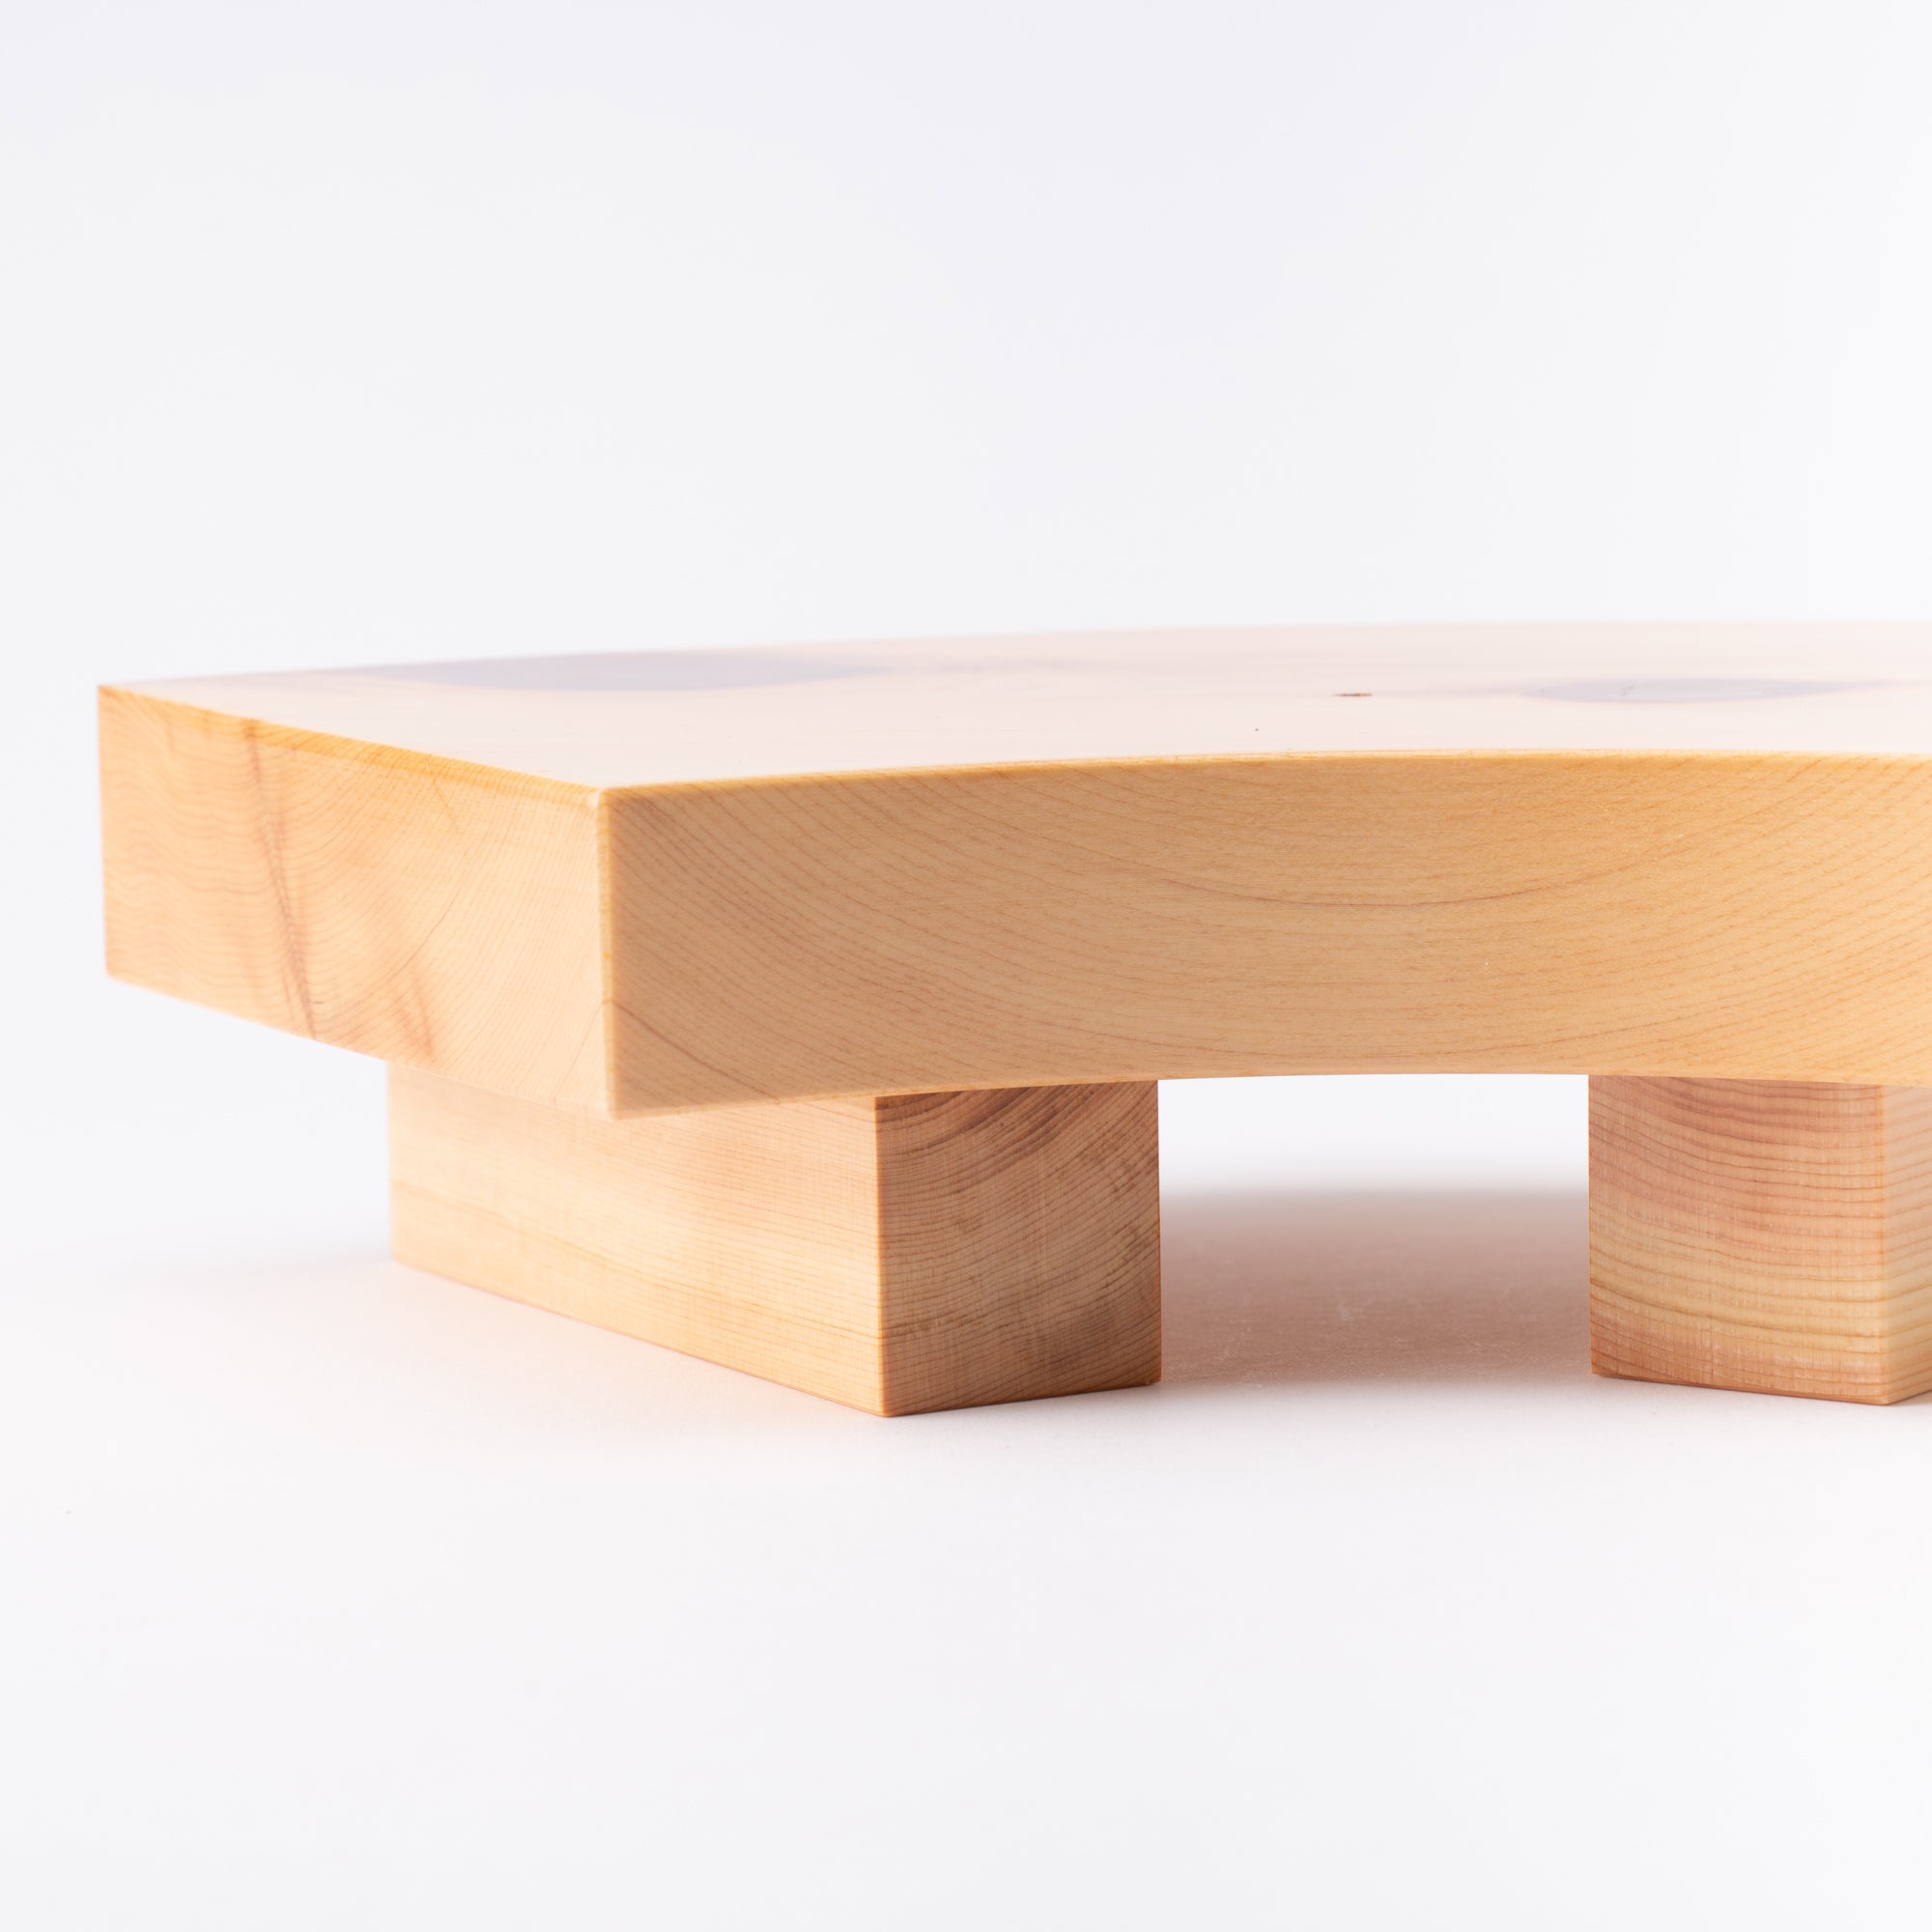 Miyabi Urushi Fan Shape Kiso Woodwork Sushi Plate 10.2in